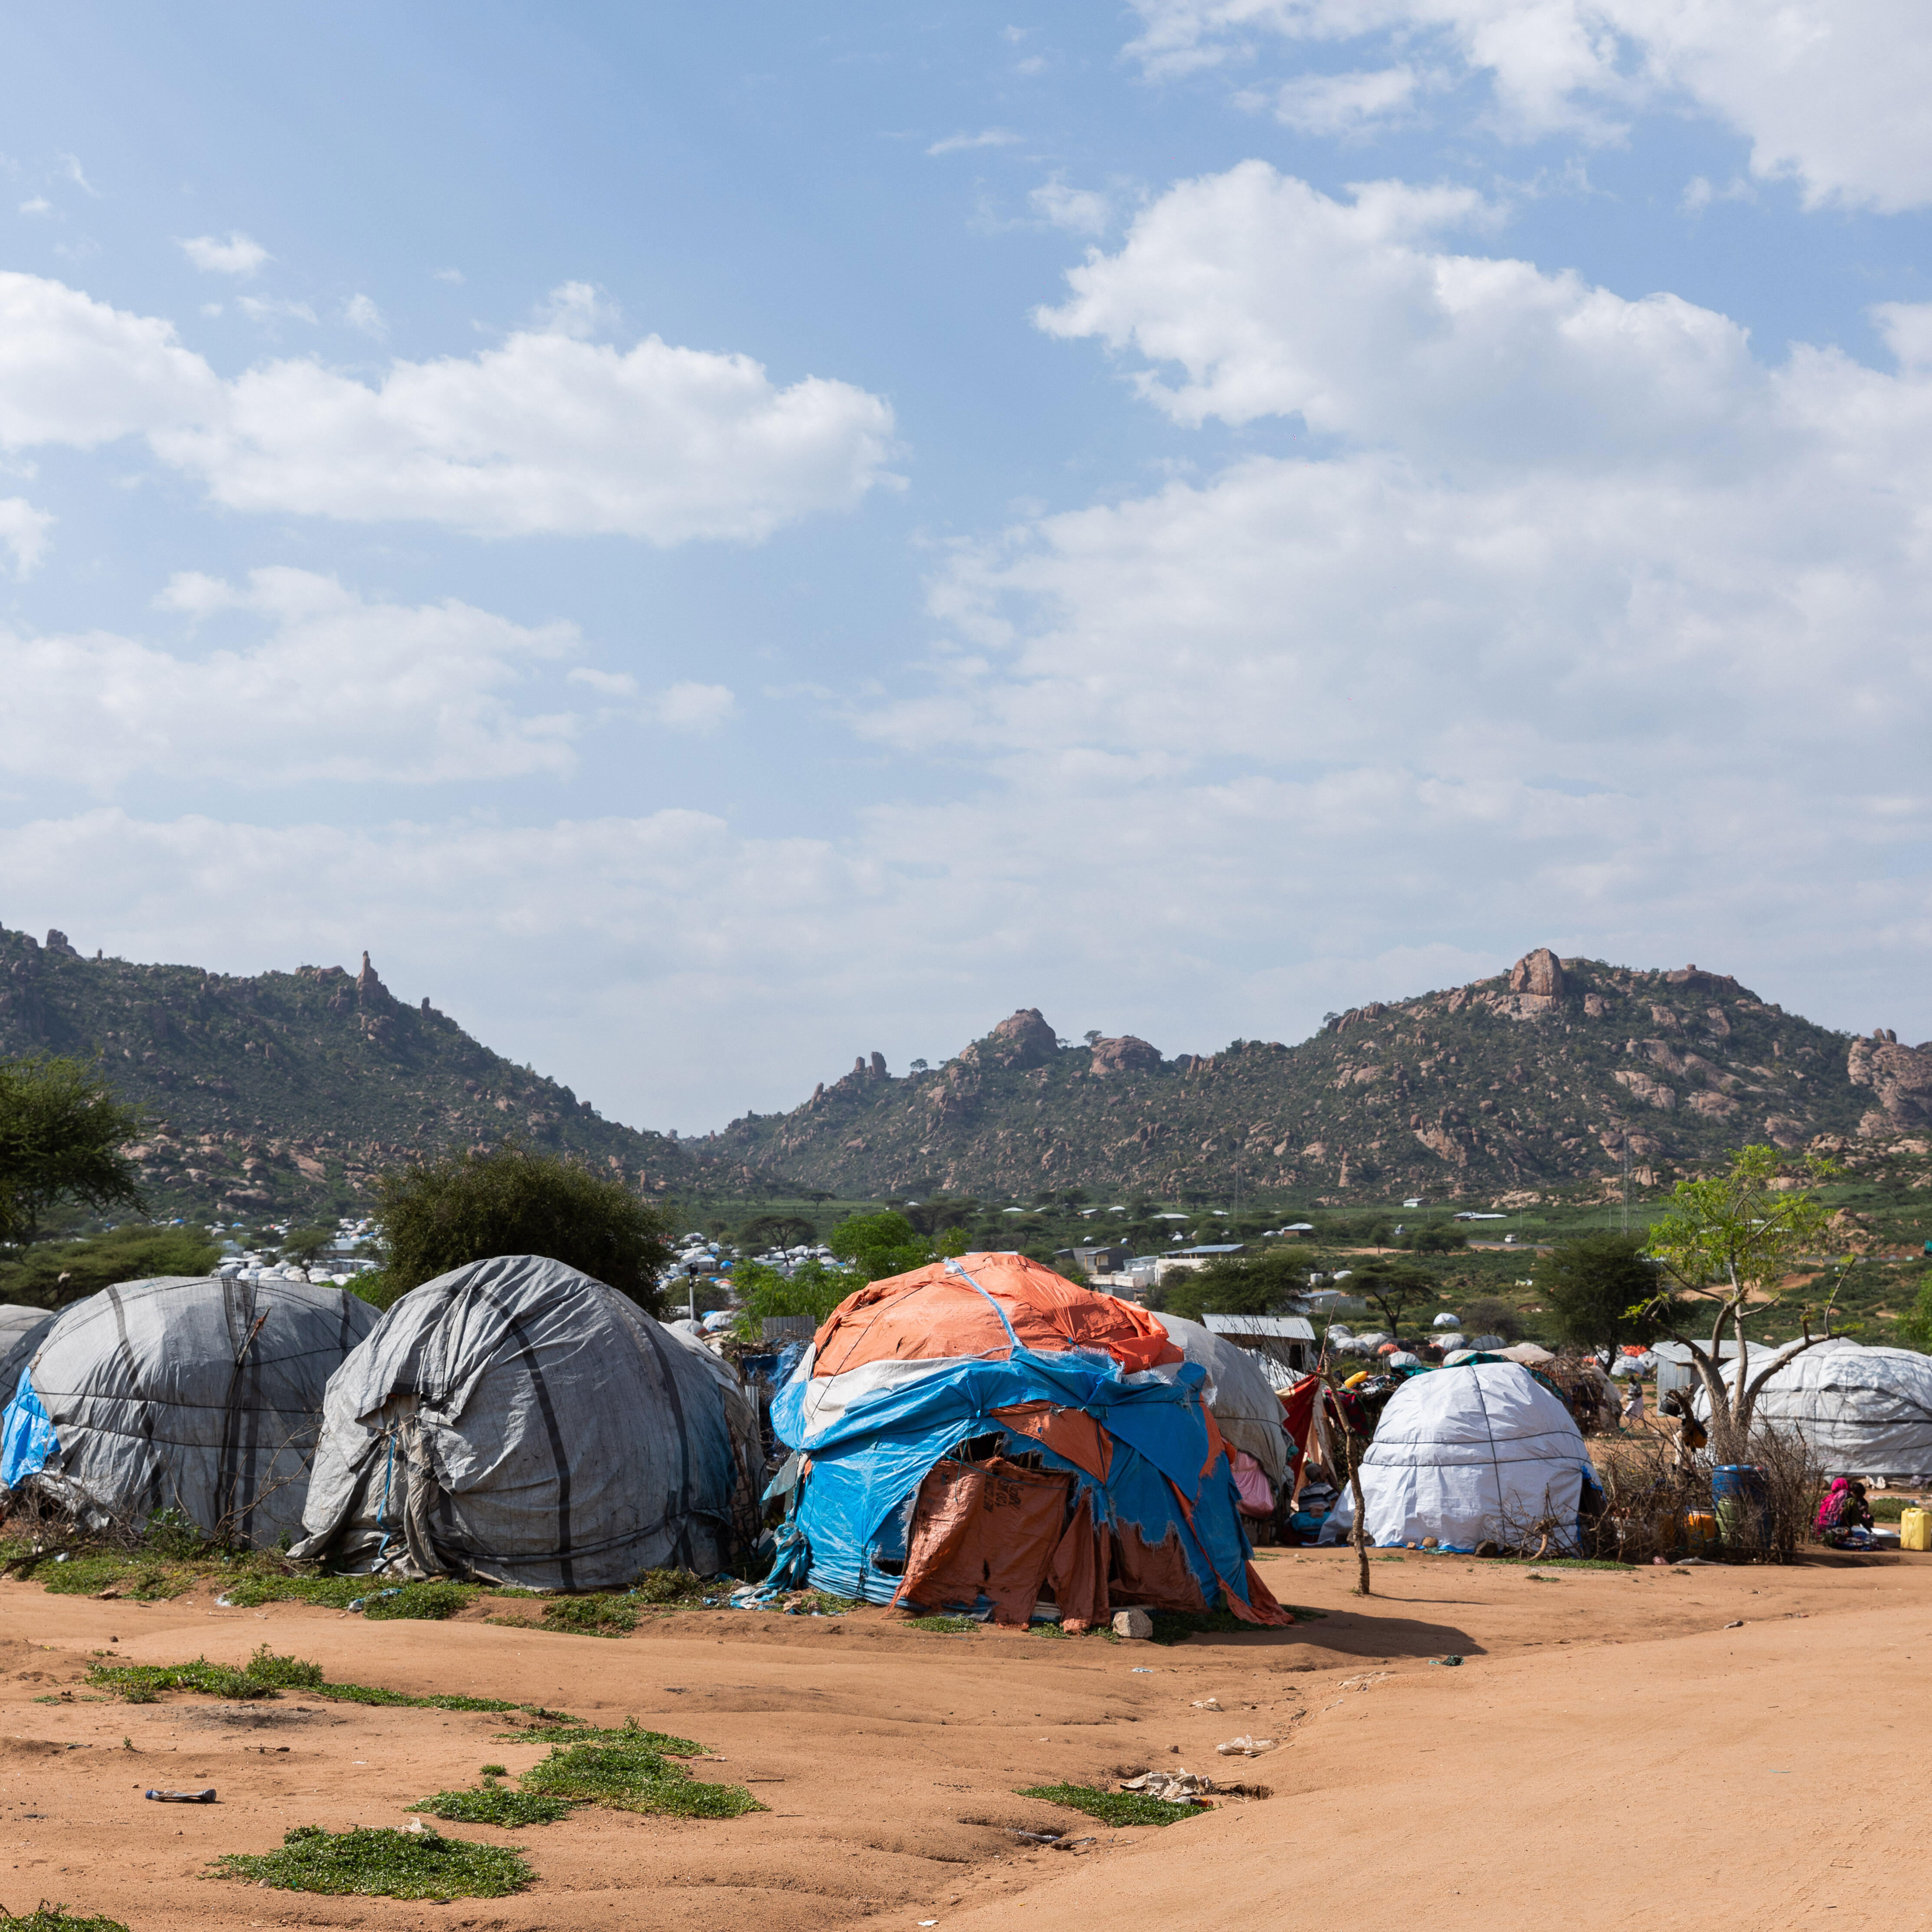 먼 거리에 산이 보이는 텐트 전경 사진.